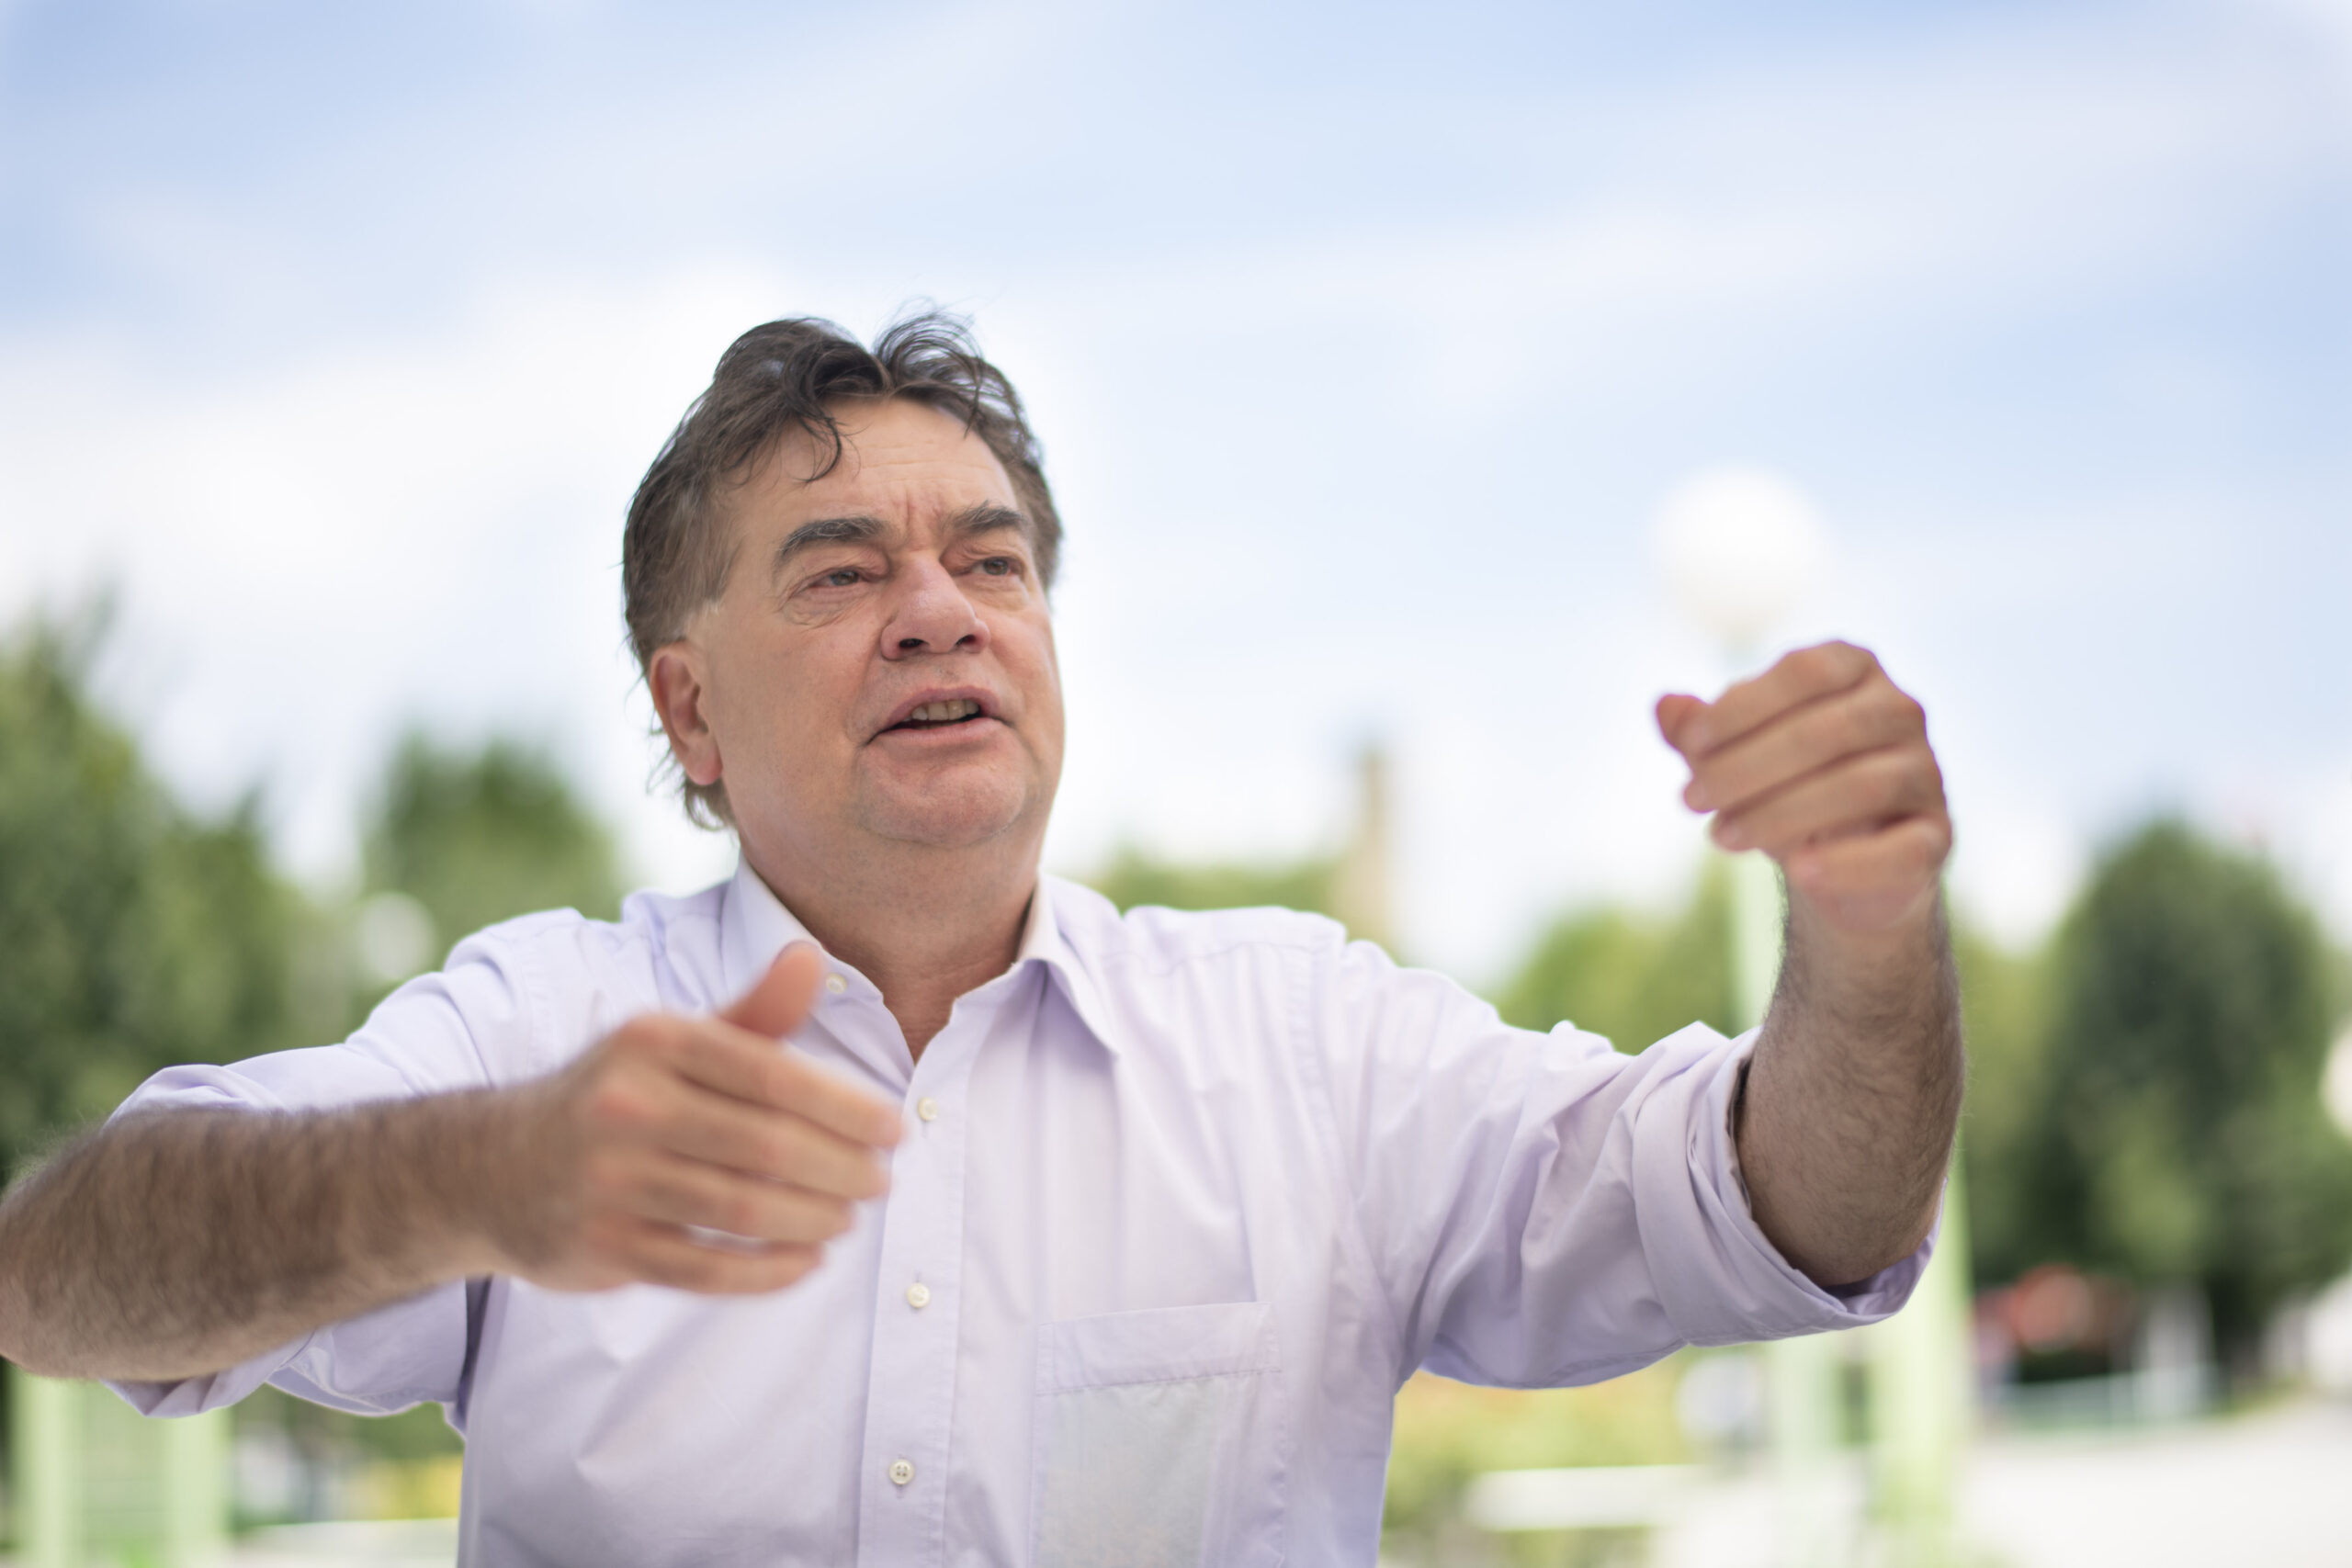 19.07.2019, Wien: Werner Kogler, Spitzenkandidat  von den Grünen